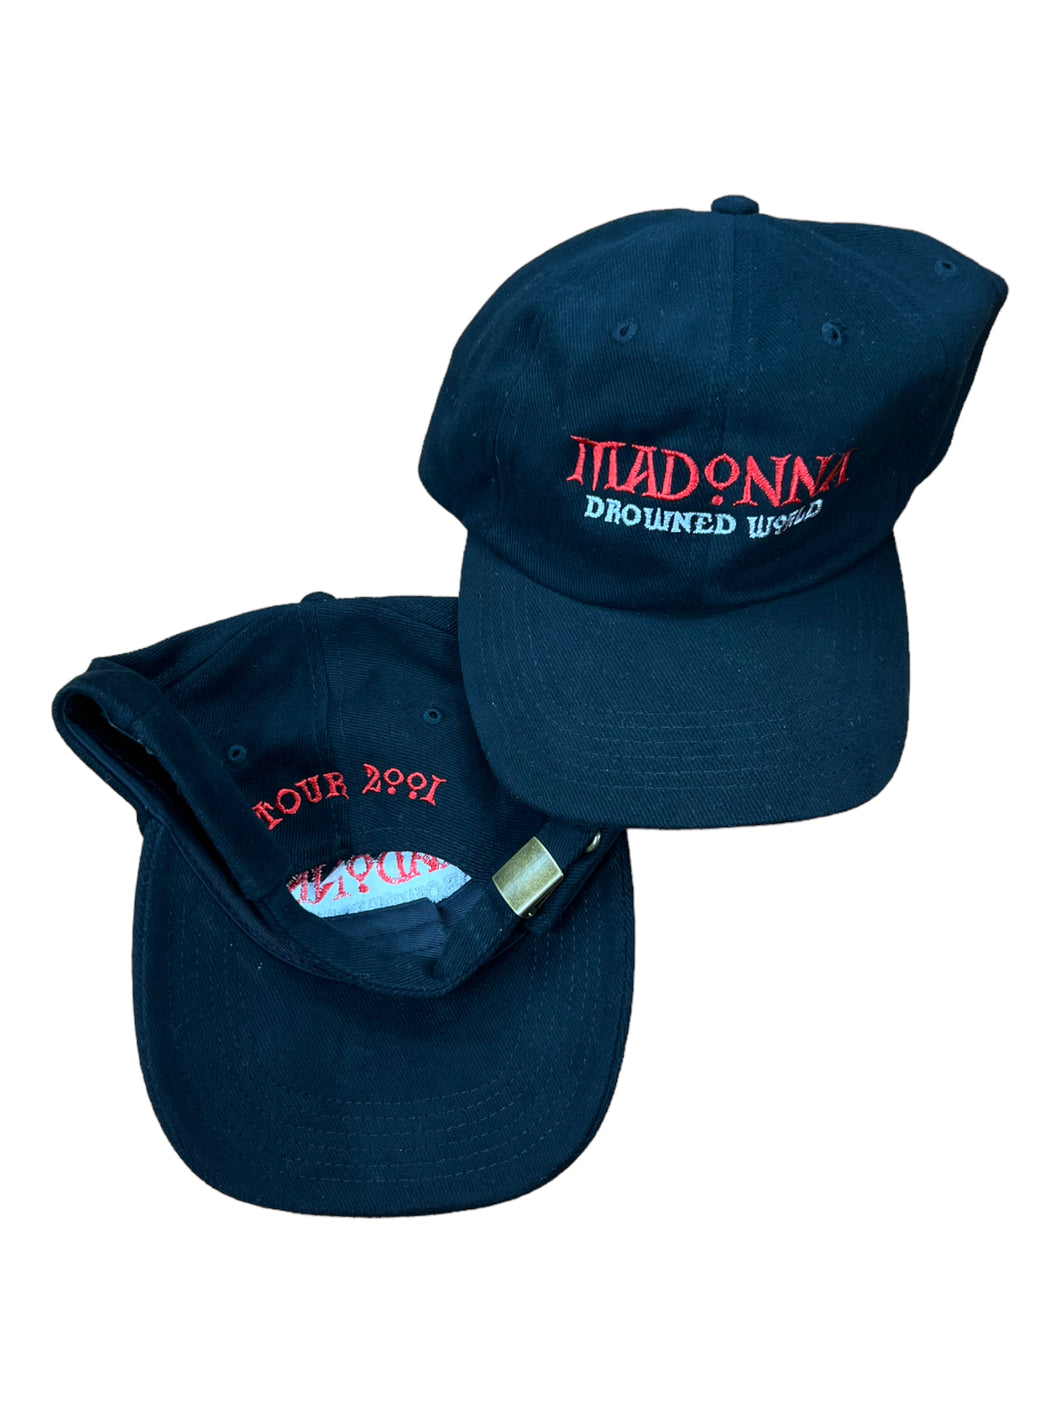 Vintage 2001 Madonna Drowned World Tour strap back hat